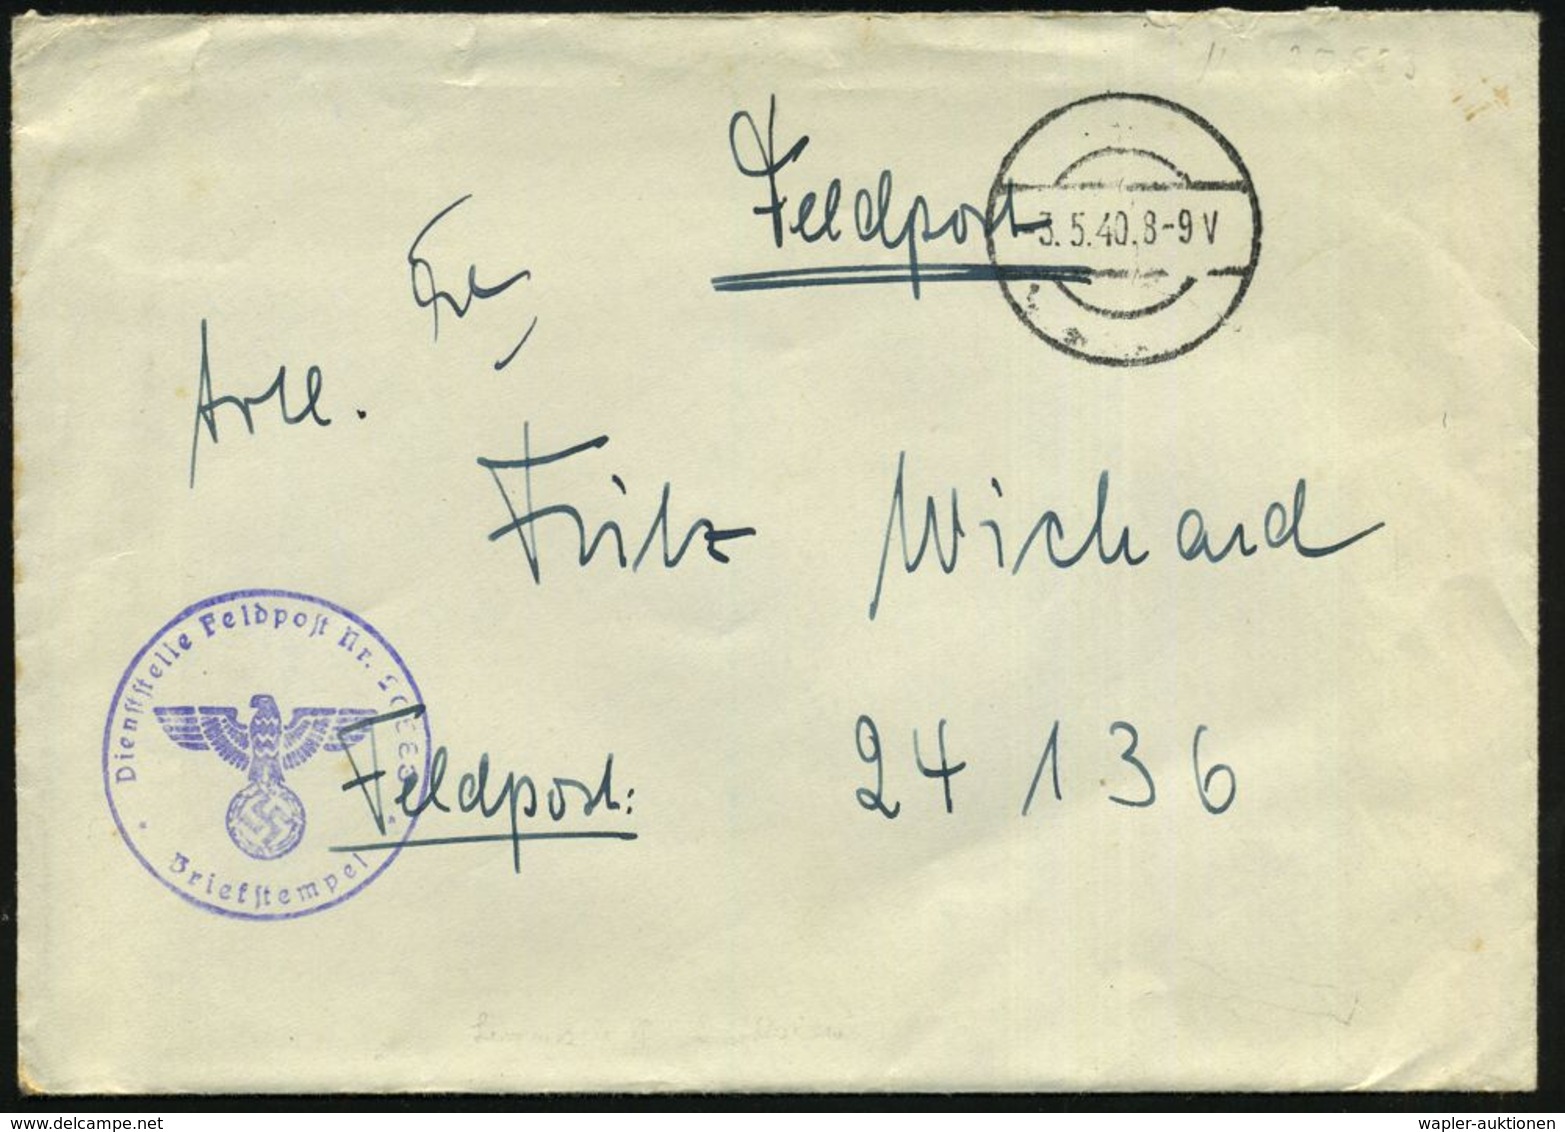 DEUTSCHES REICH 1940 (3.5.) Stummer 1K-Steg = Tarnstempel + Viol. 1K-HdN: Feldpost Nr. 20 583 = Linienschiff "Schlesien" - Maritime